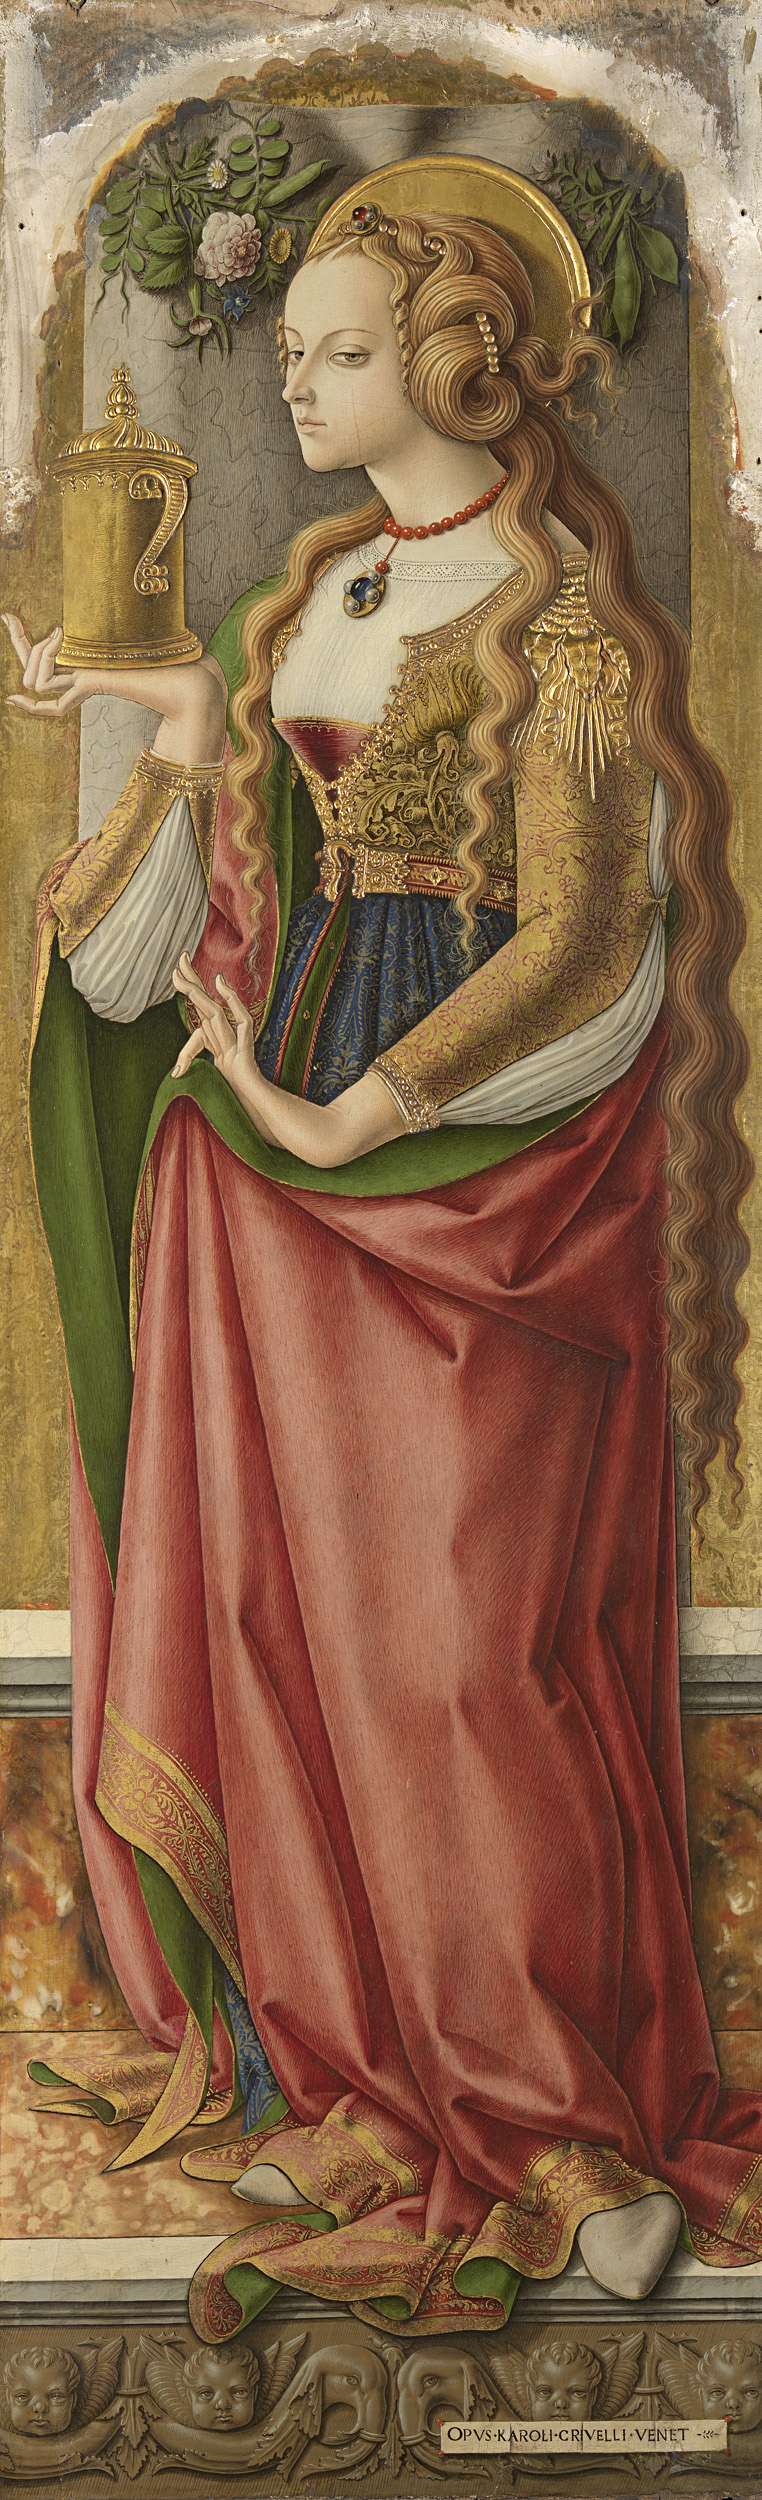 Карло Кривелли. «Мария Магдалина», ок. 1480 г. Роскошно одетая, как и положено блуднице, Магдалина с длинными распущенными волосами держит в руках сосуд с благовониями